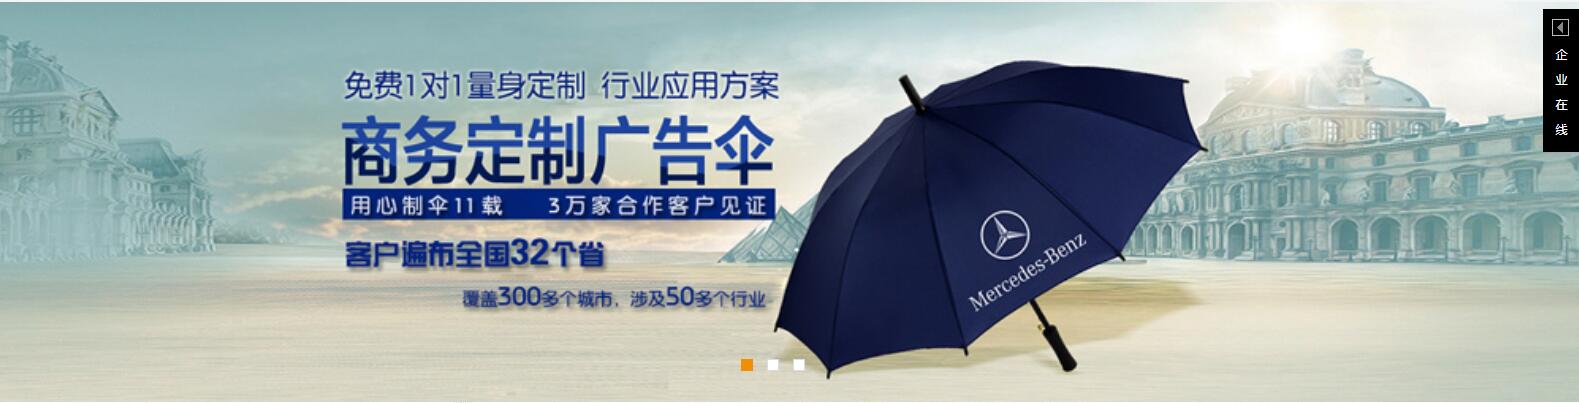 惠州雨伞厂家